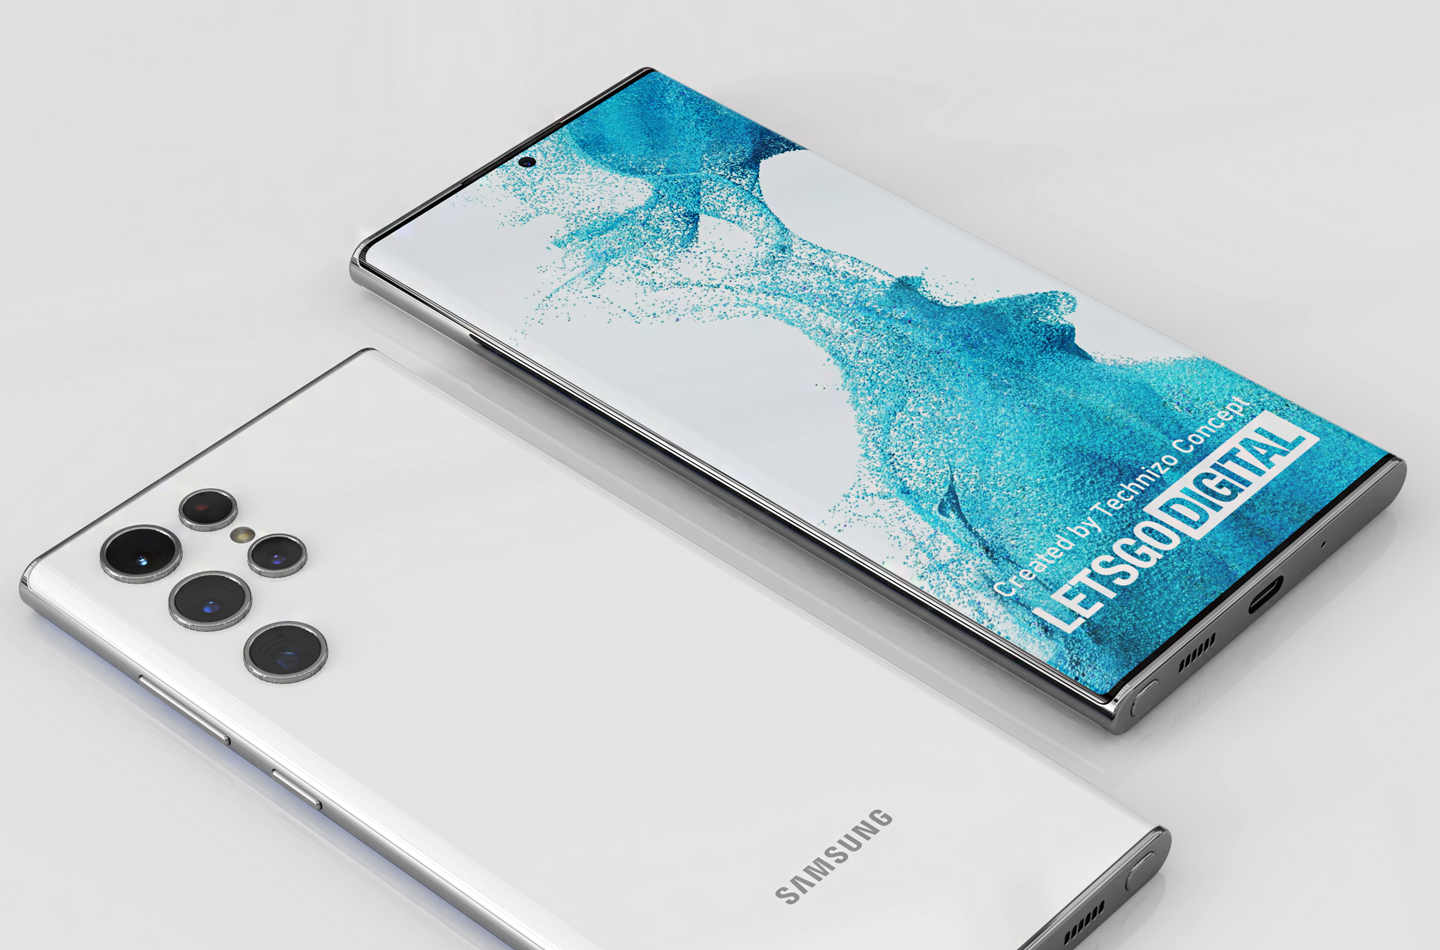 Khám phá bộ sưu tập những hình nền chính thức dành cho Samsung Galaxy S22 Ultra. Tận hưởng trải nghiệm tuyệt vời khi trang trí màn hình điện thoại của bạn với những hình ảnh chất lượng cao và độc đáo nhất từ Samsung.